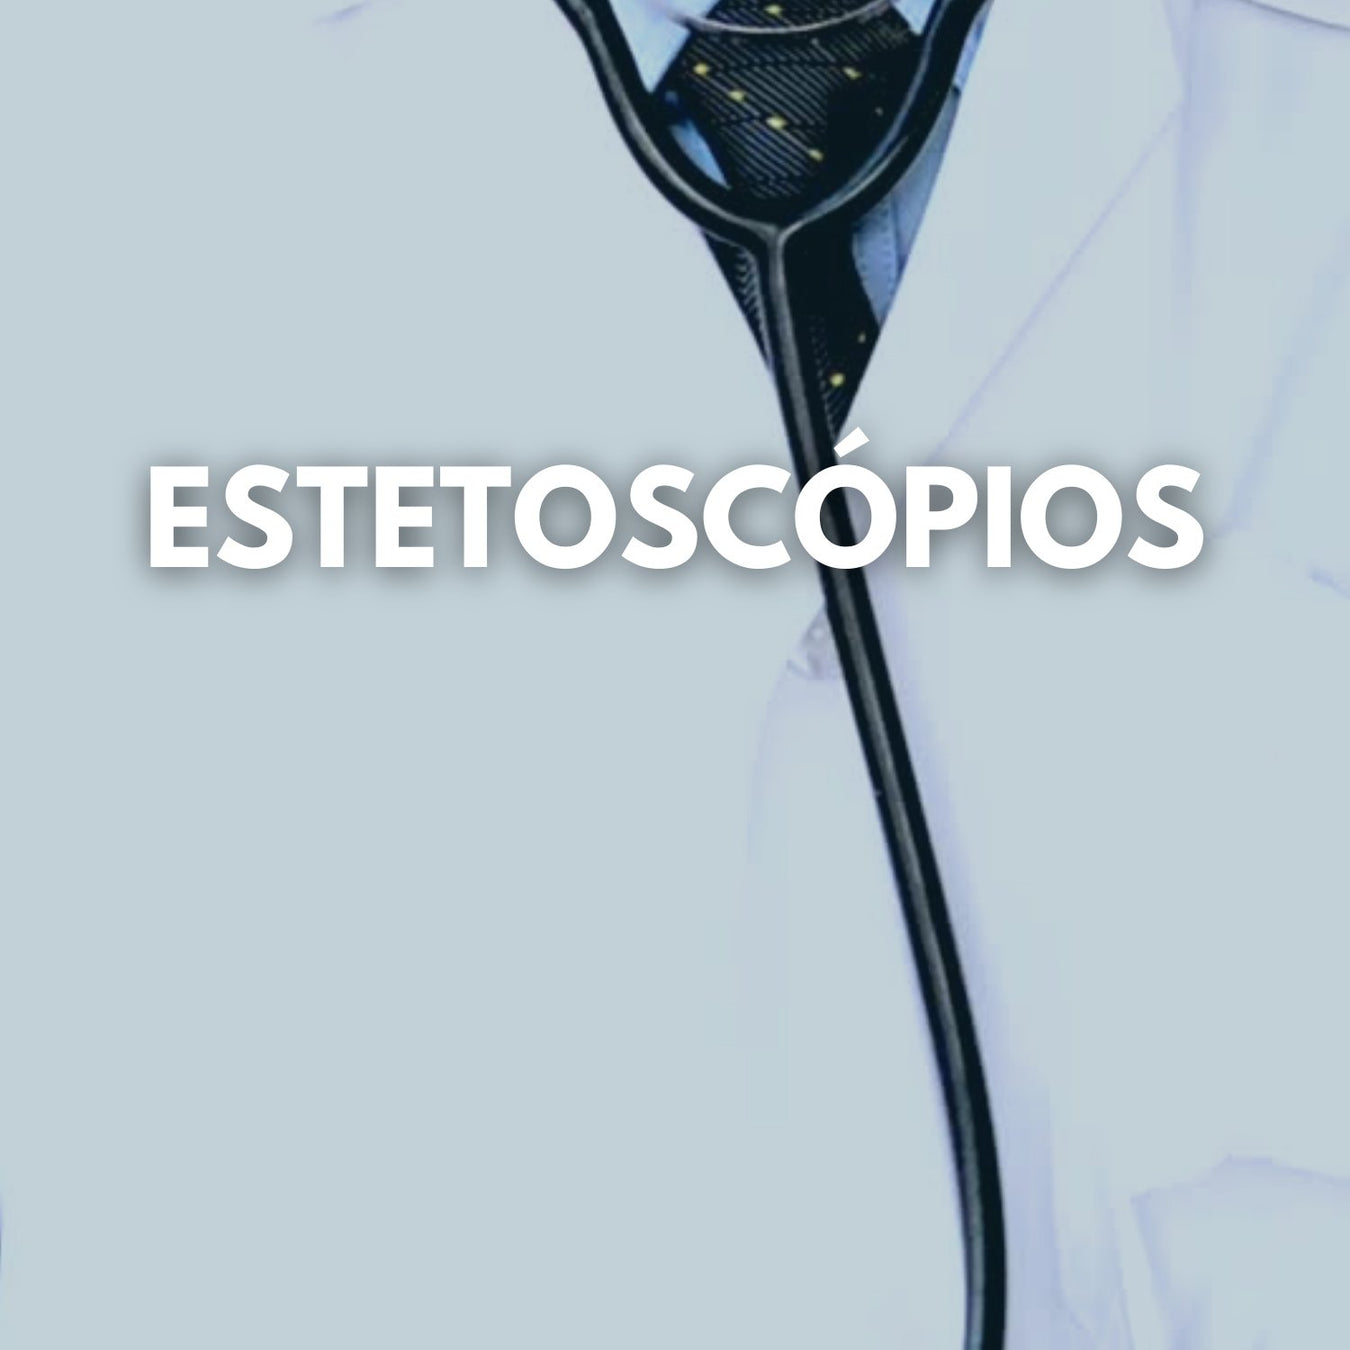 Estetoscópios